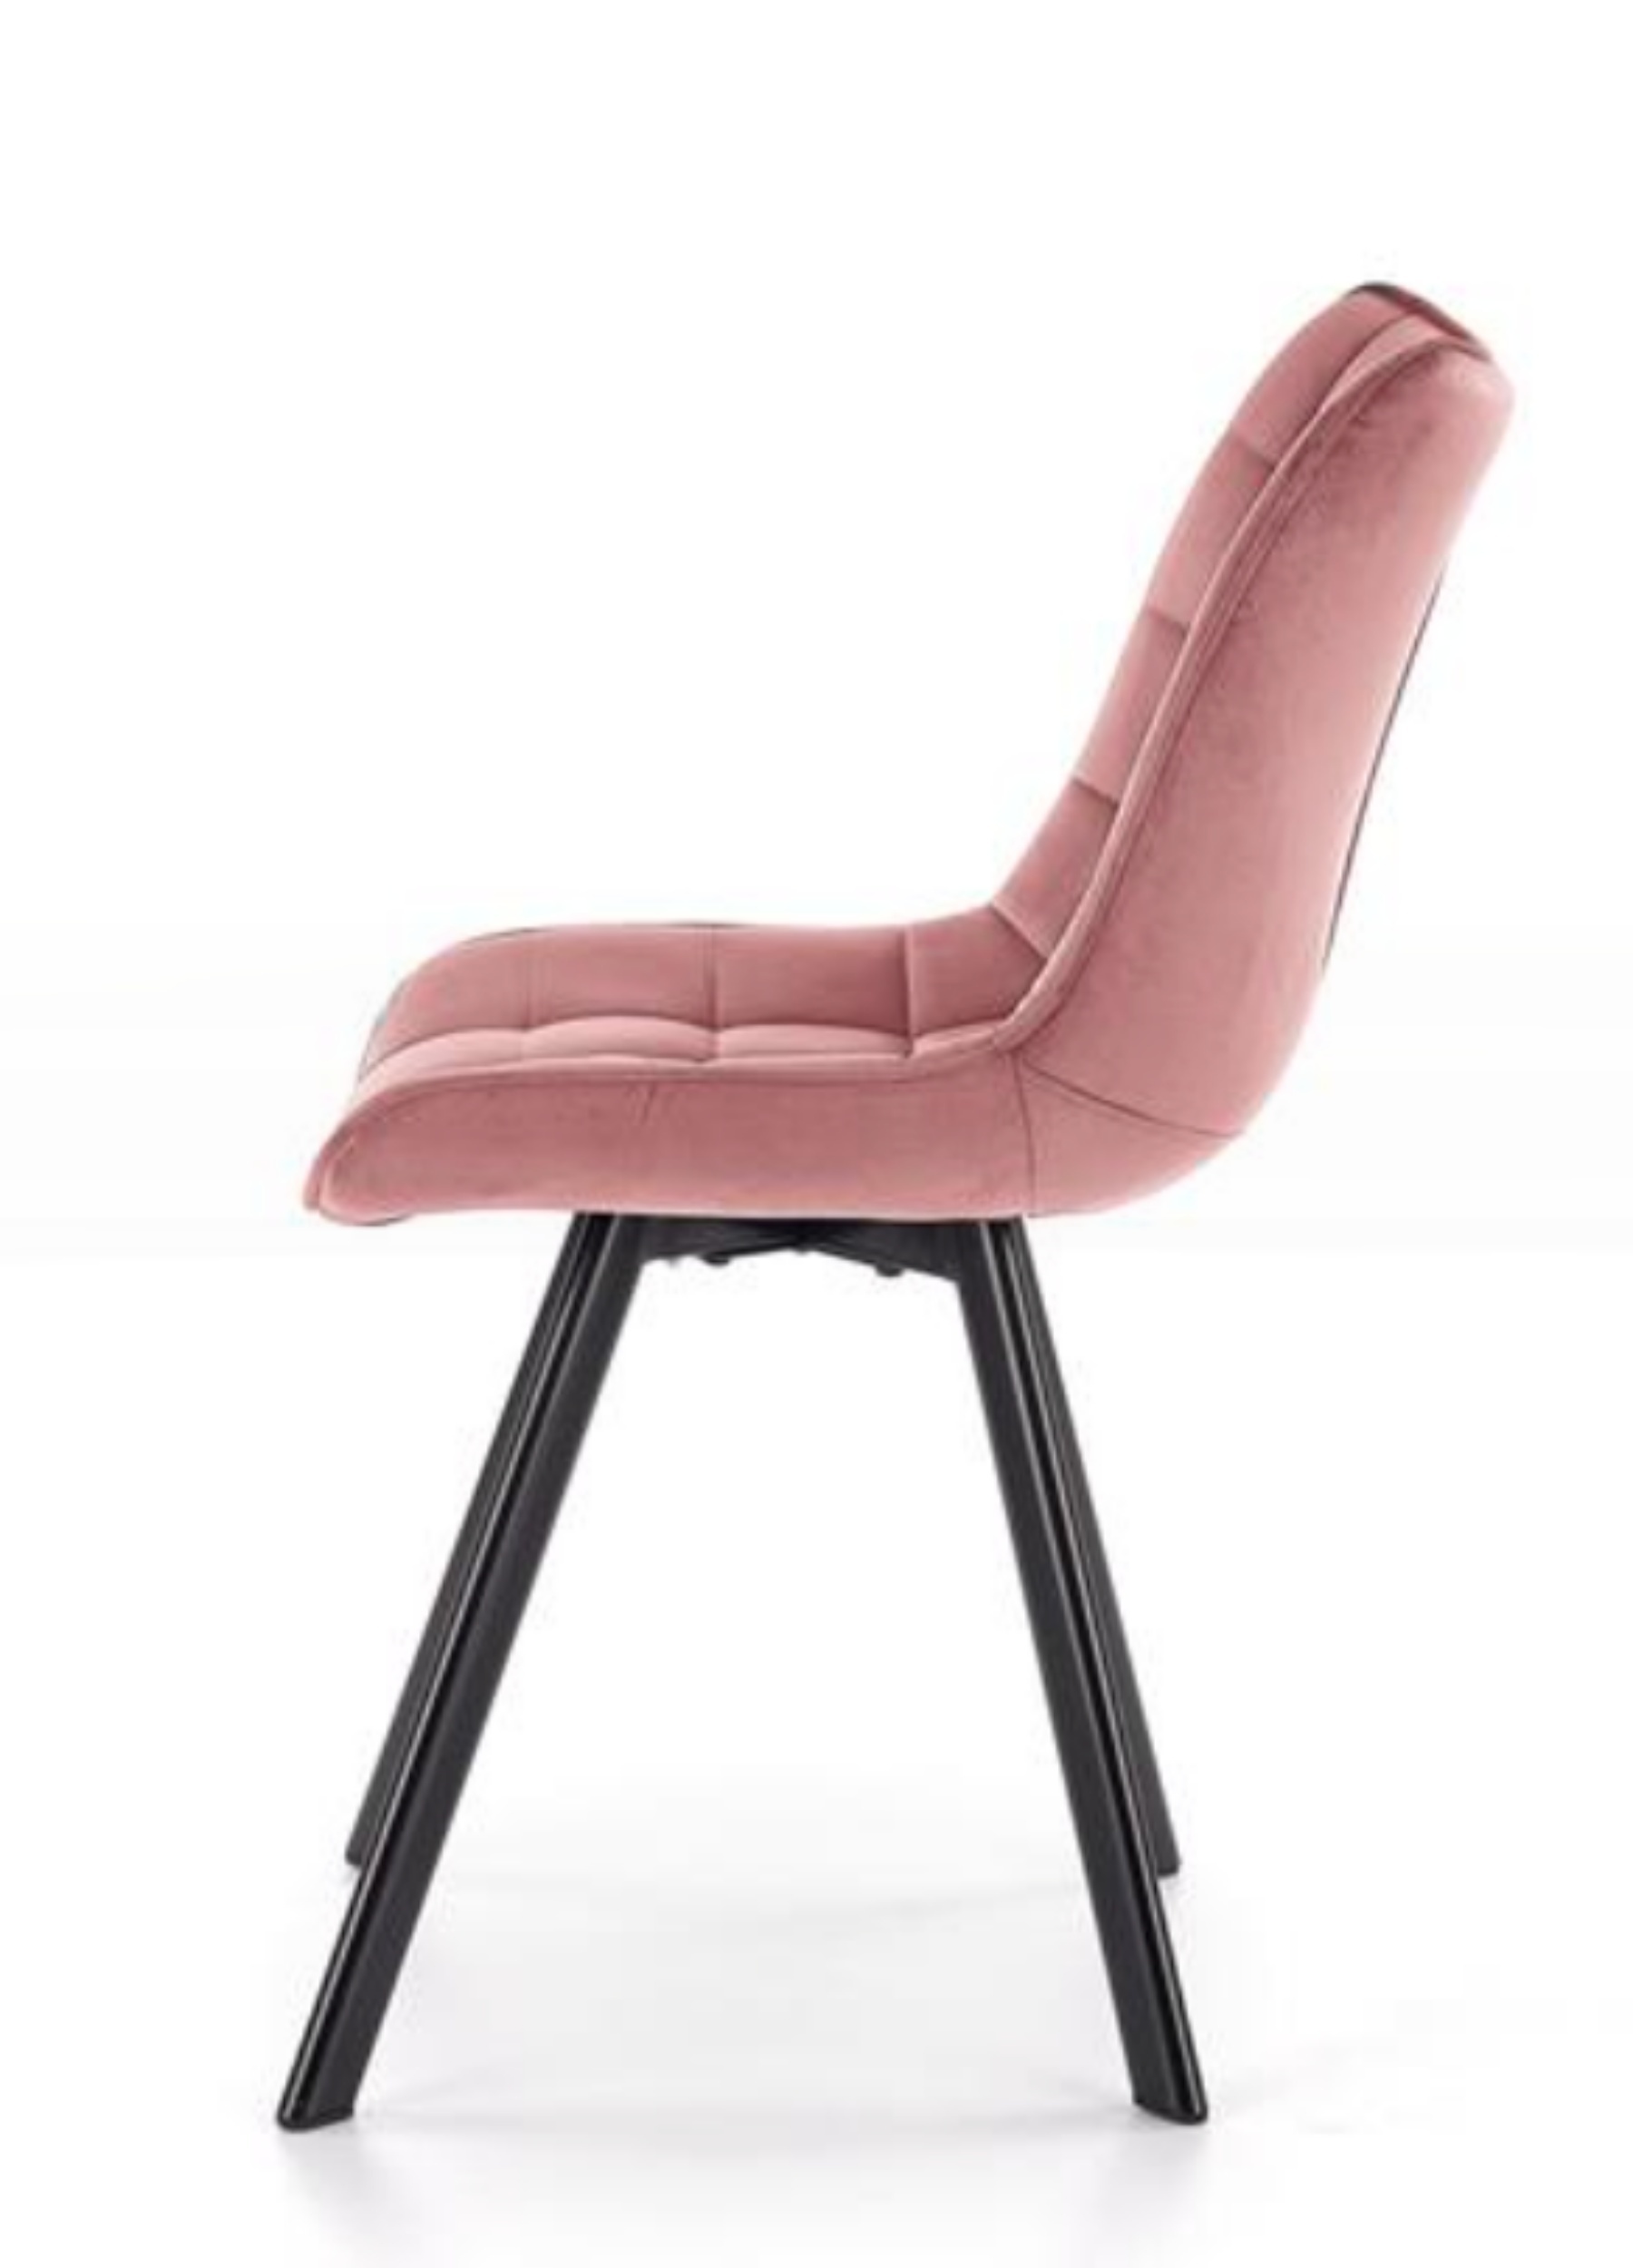 Krzesło tapicerowane Derisa różowe